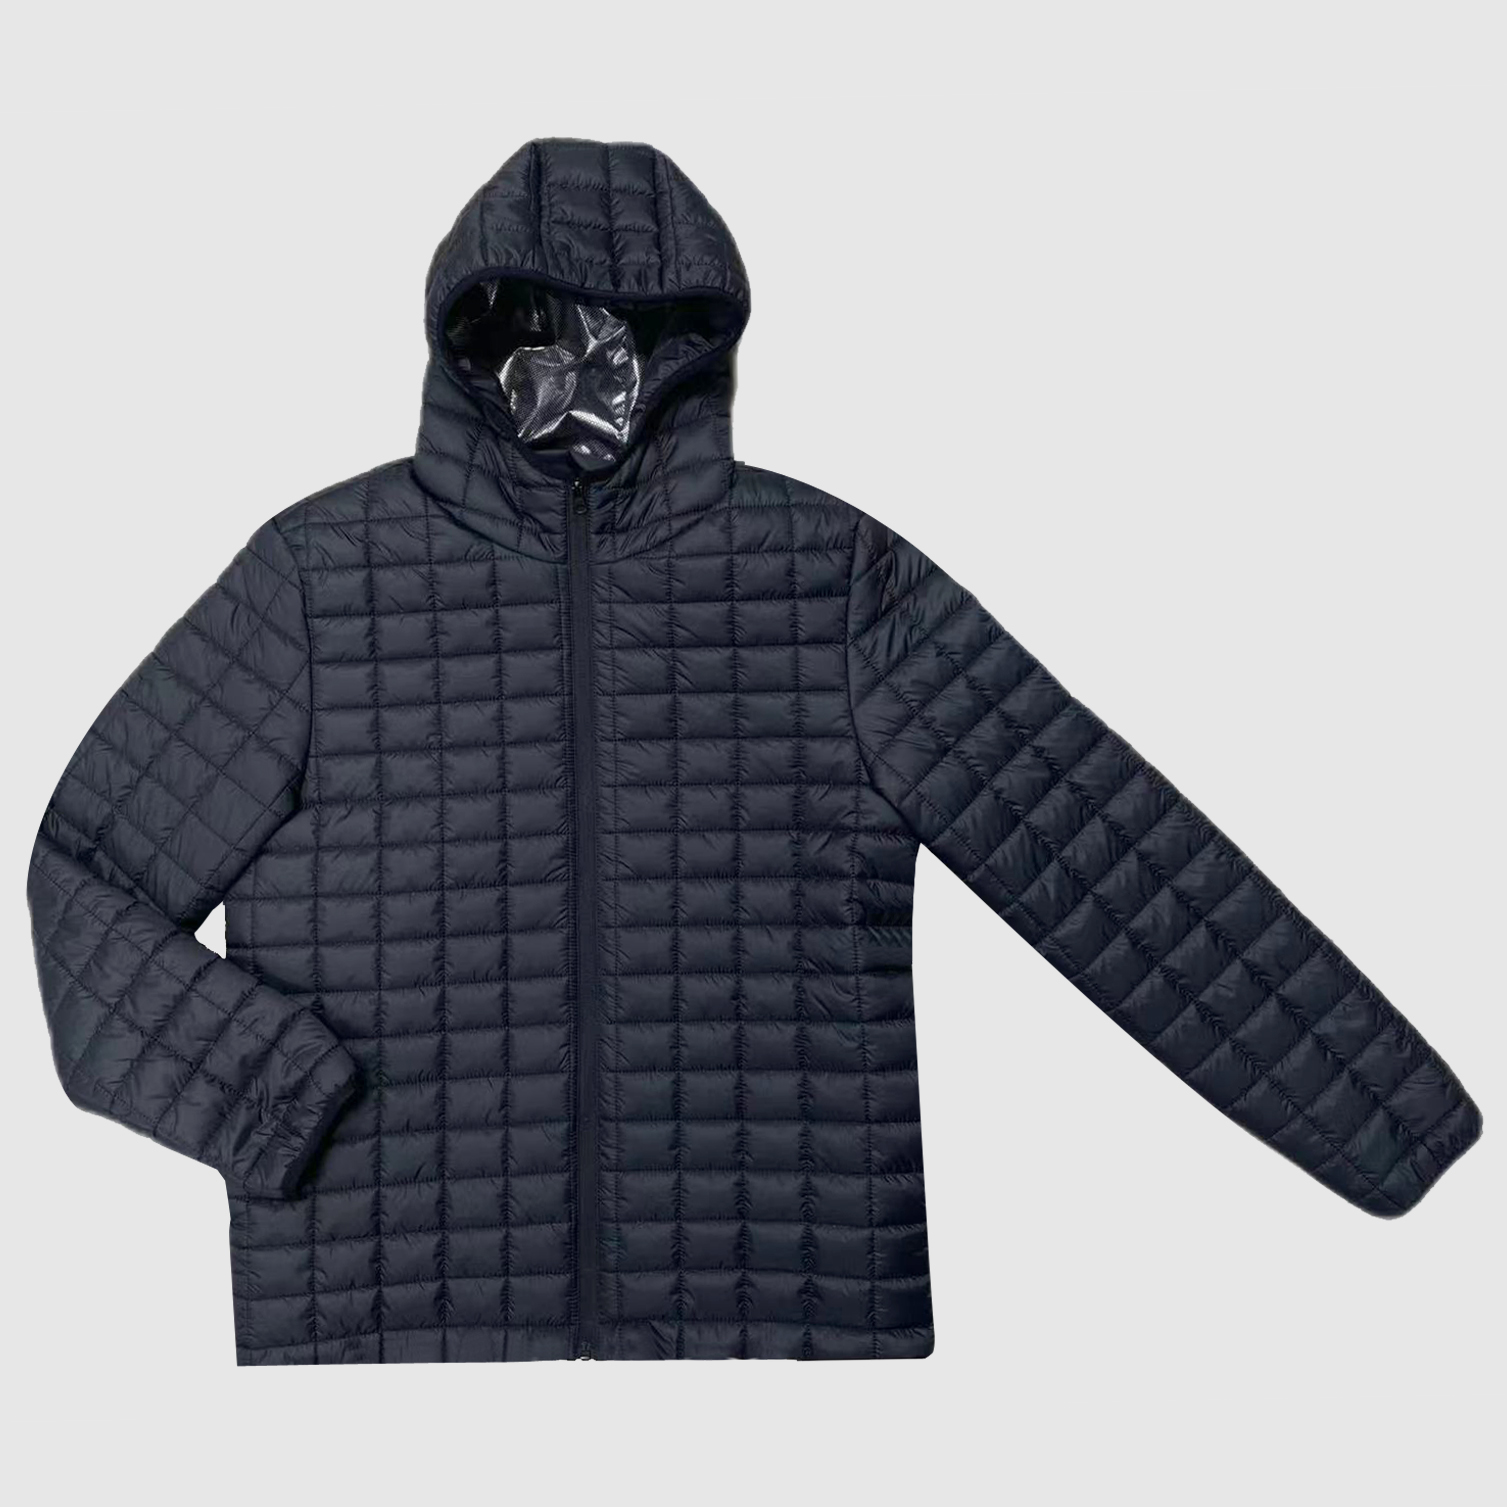 Wholesale Price Wool Jacket Mens Outdoor -
 Men’s padding jacket – Senkai